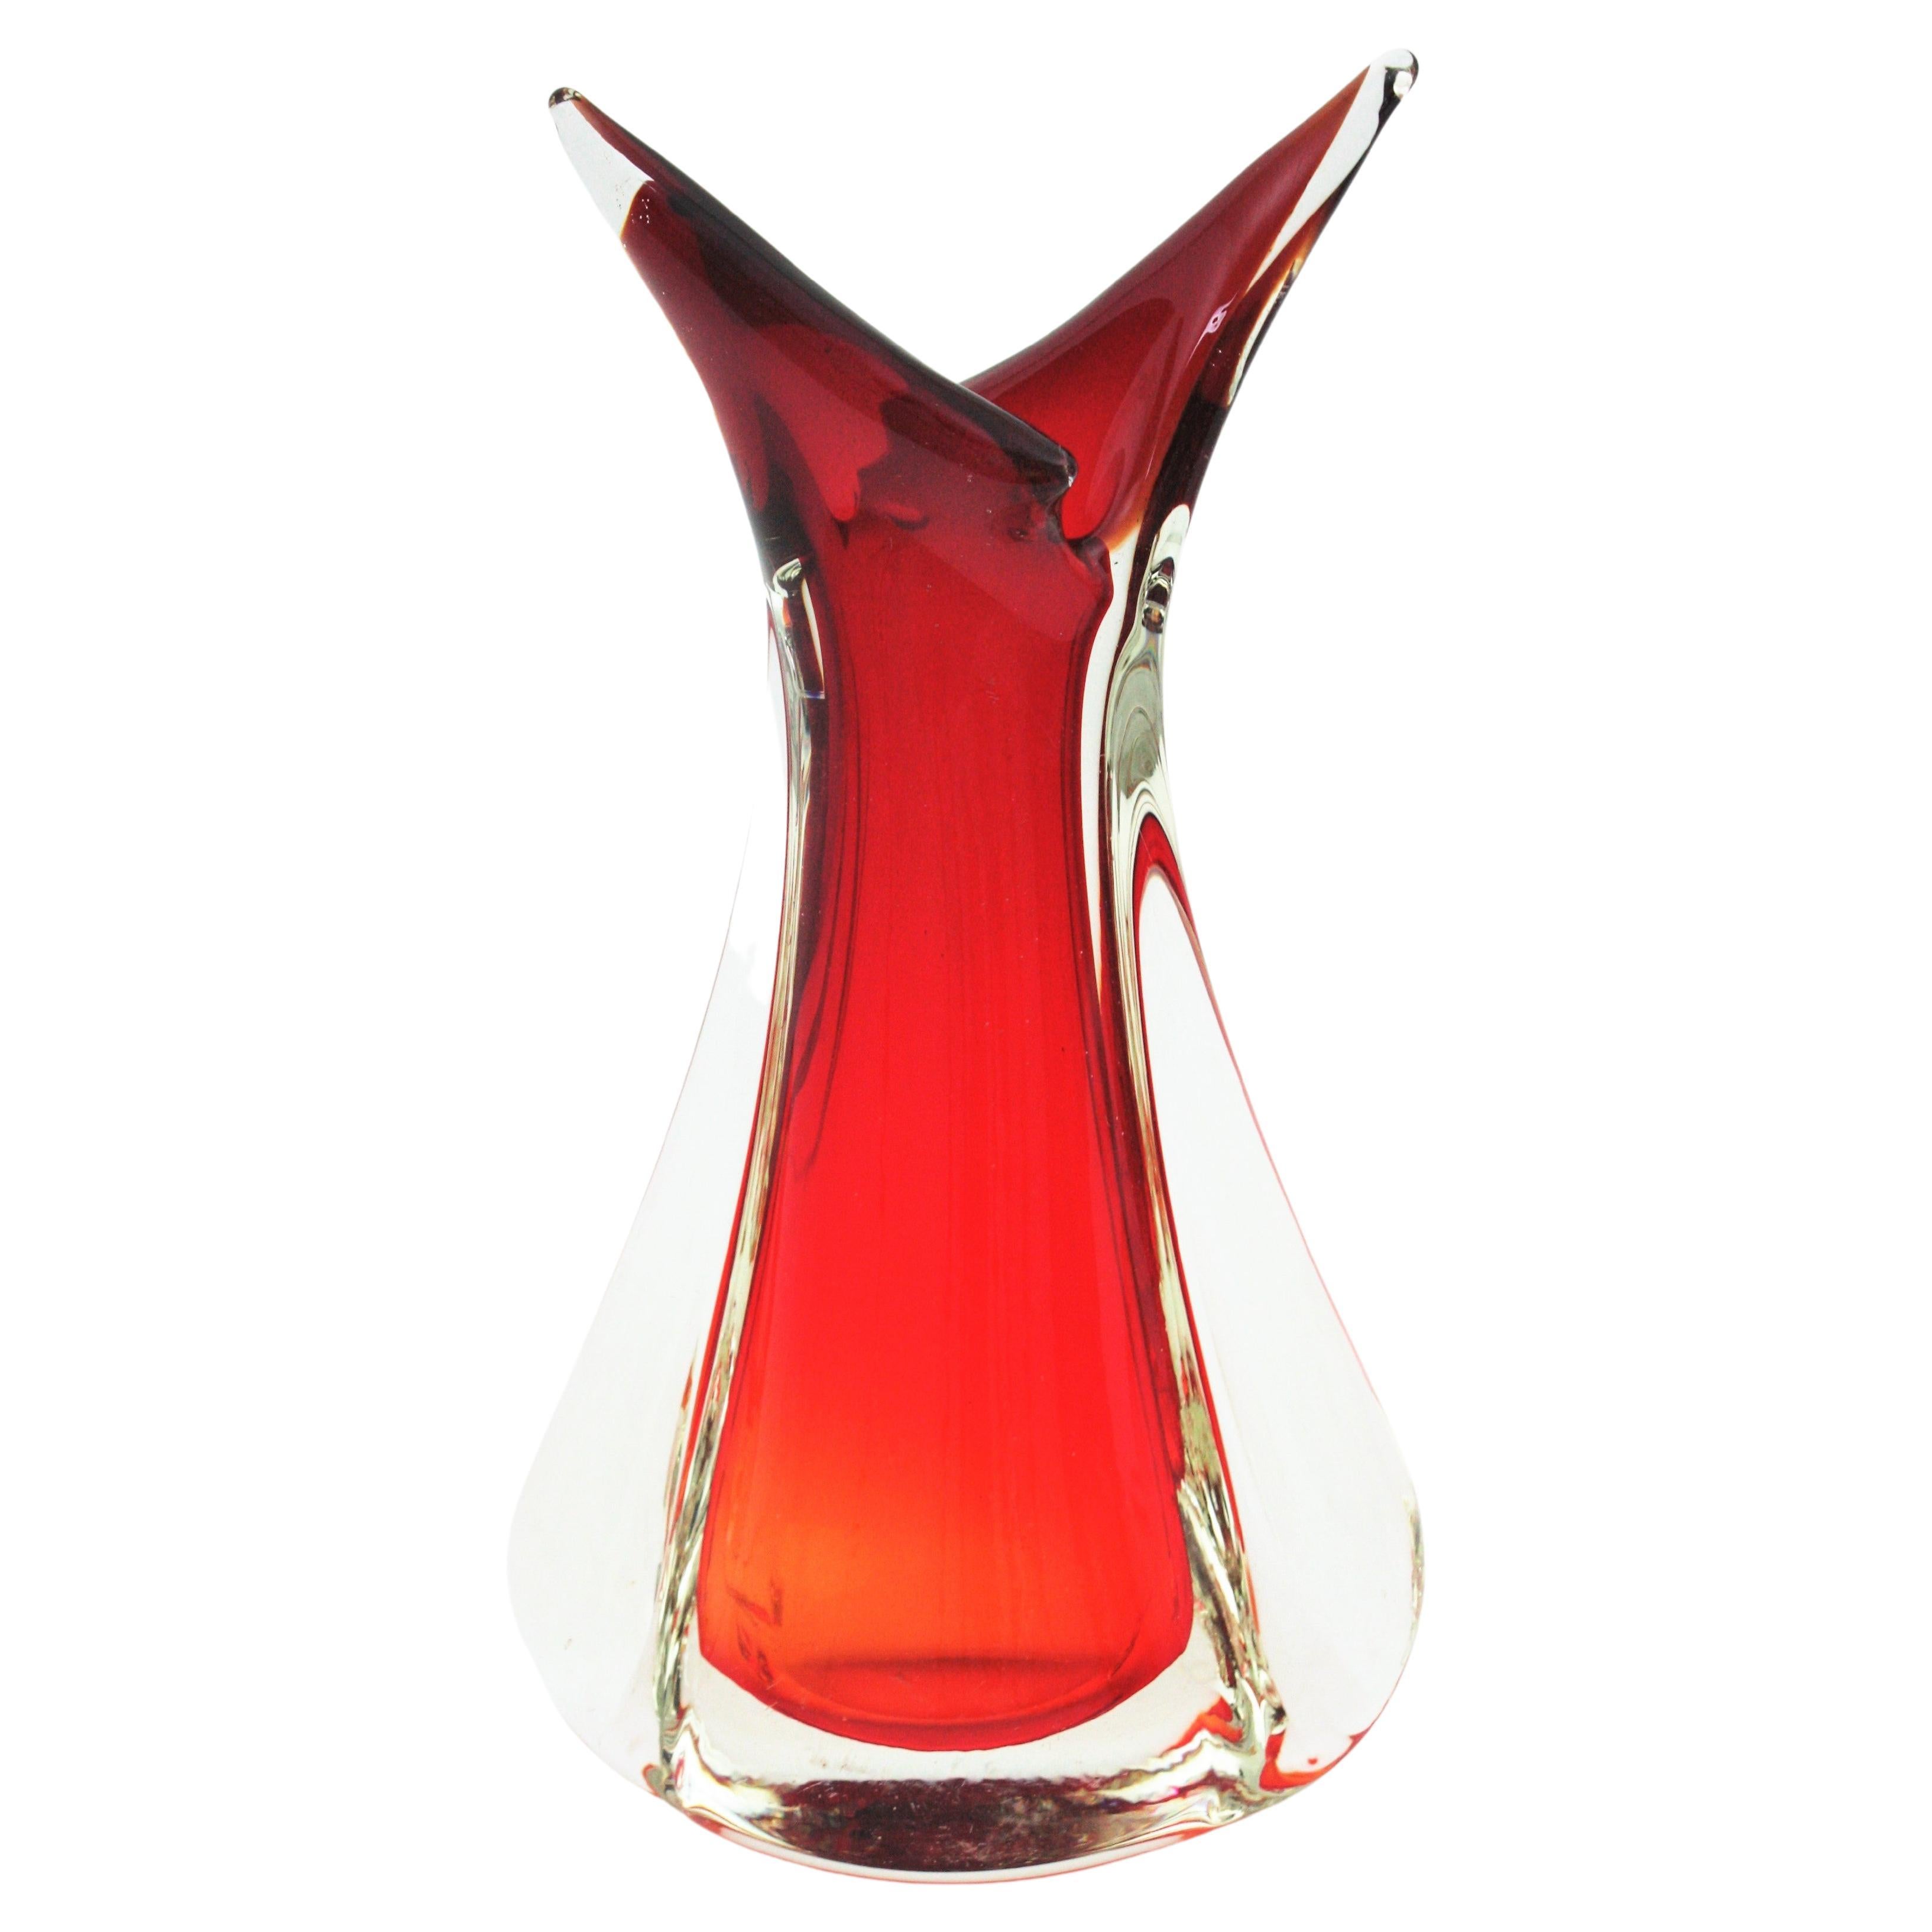 Flavio Poli Seguso Red Orange Sommerso Murano Art Glass Vase For Sale